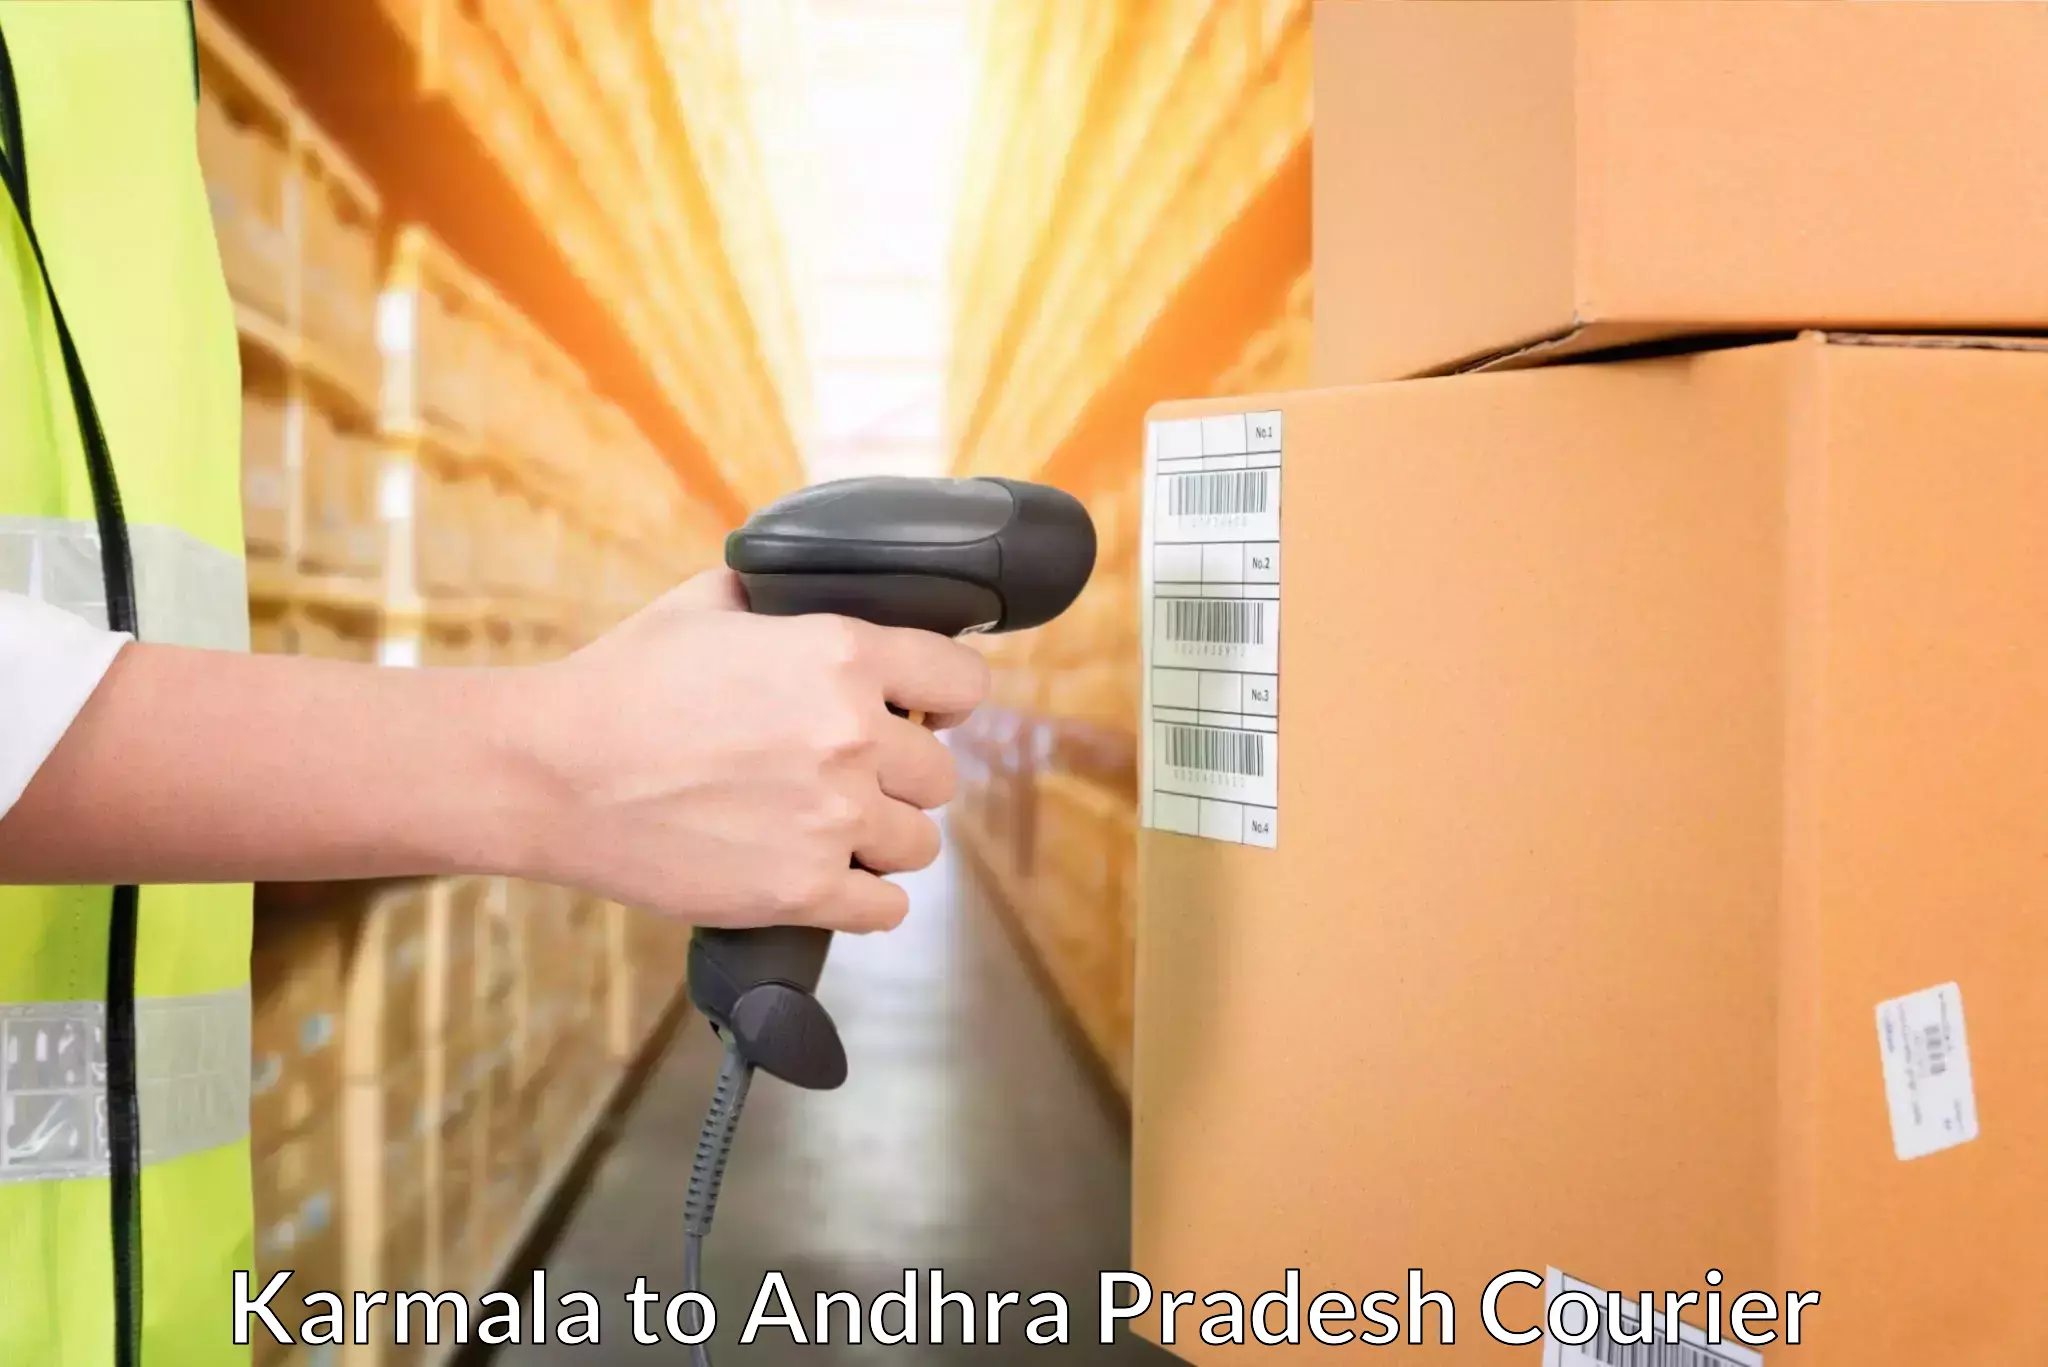 Global shipping networks in Karmala to Amarapuram